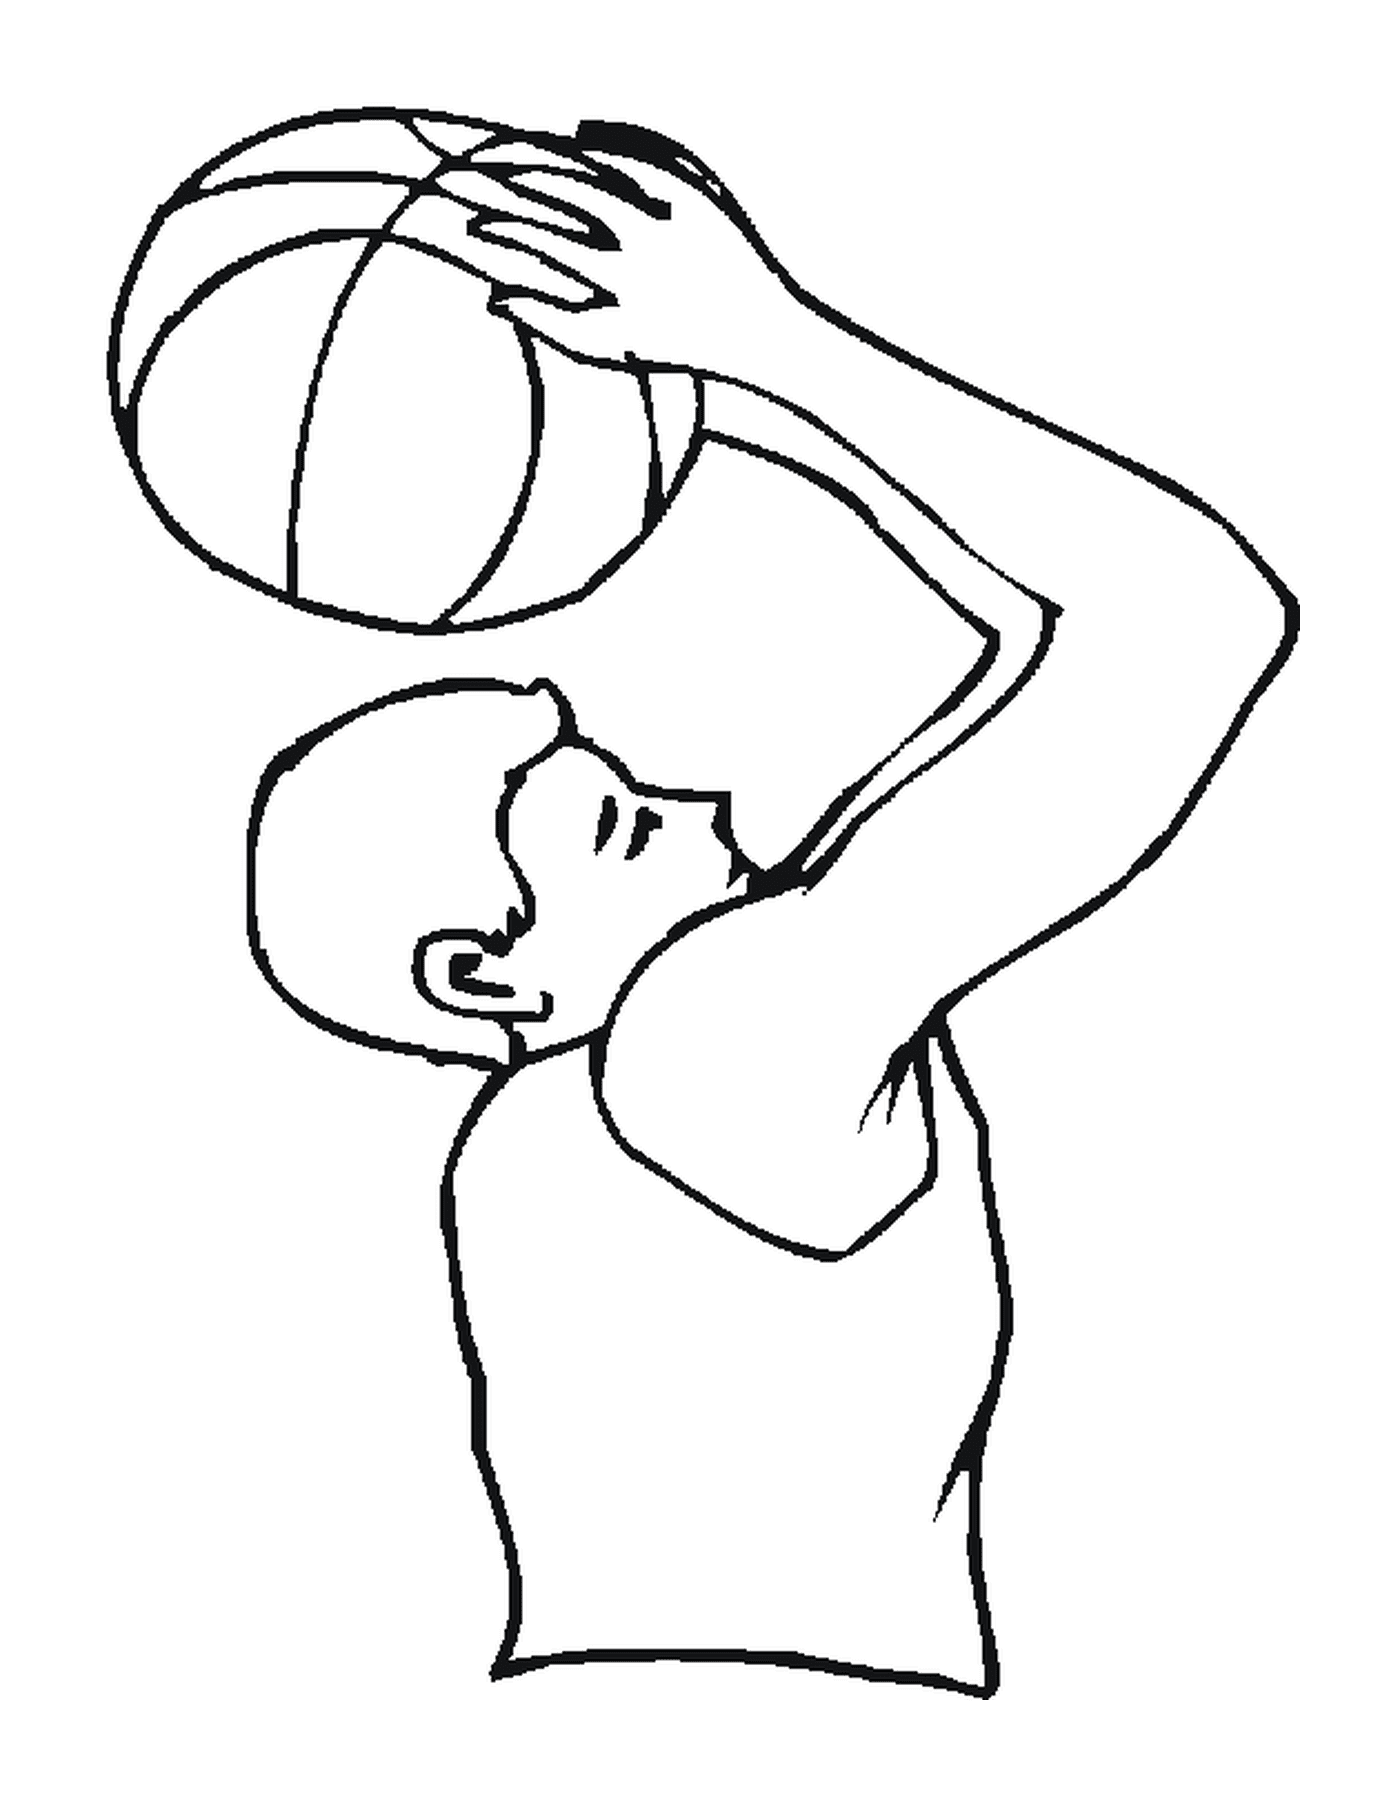  Um homem segura uma bola de basquete 